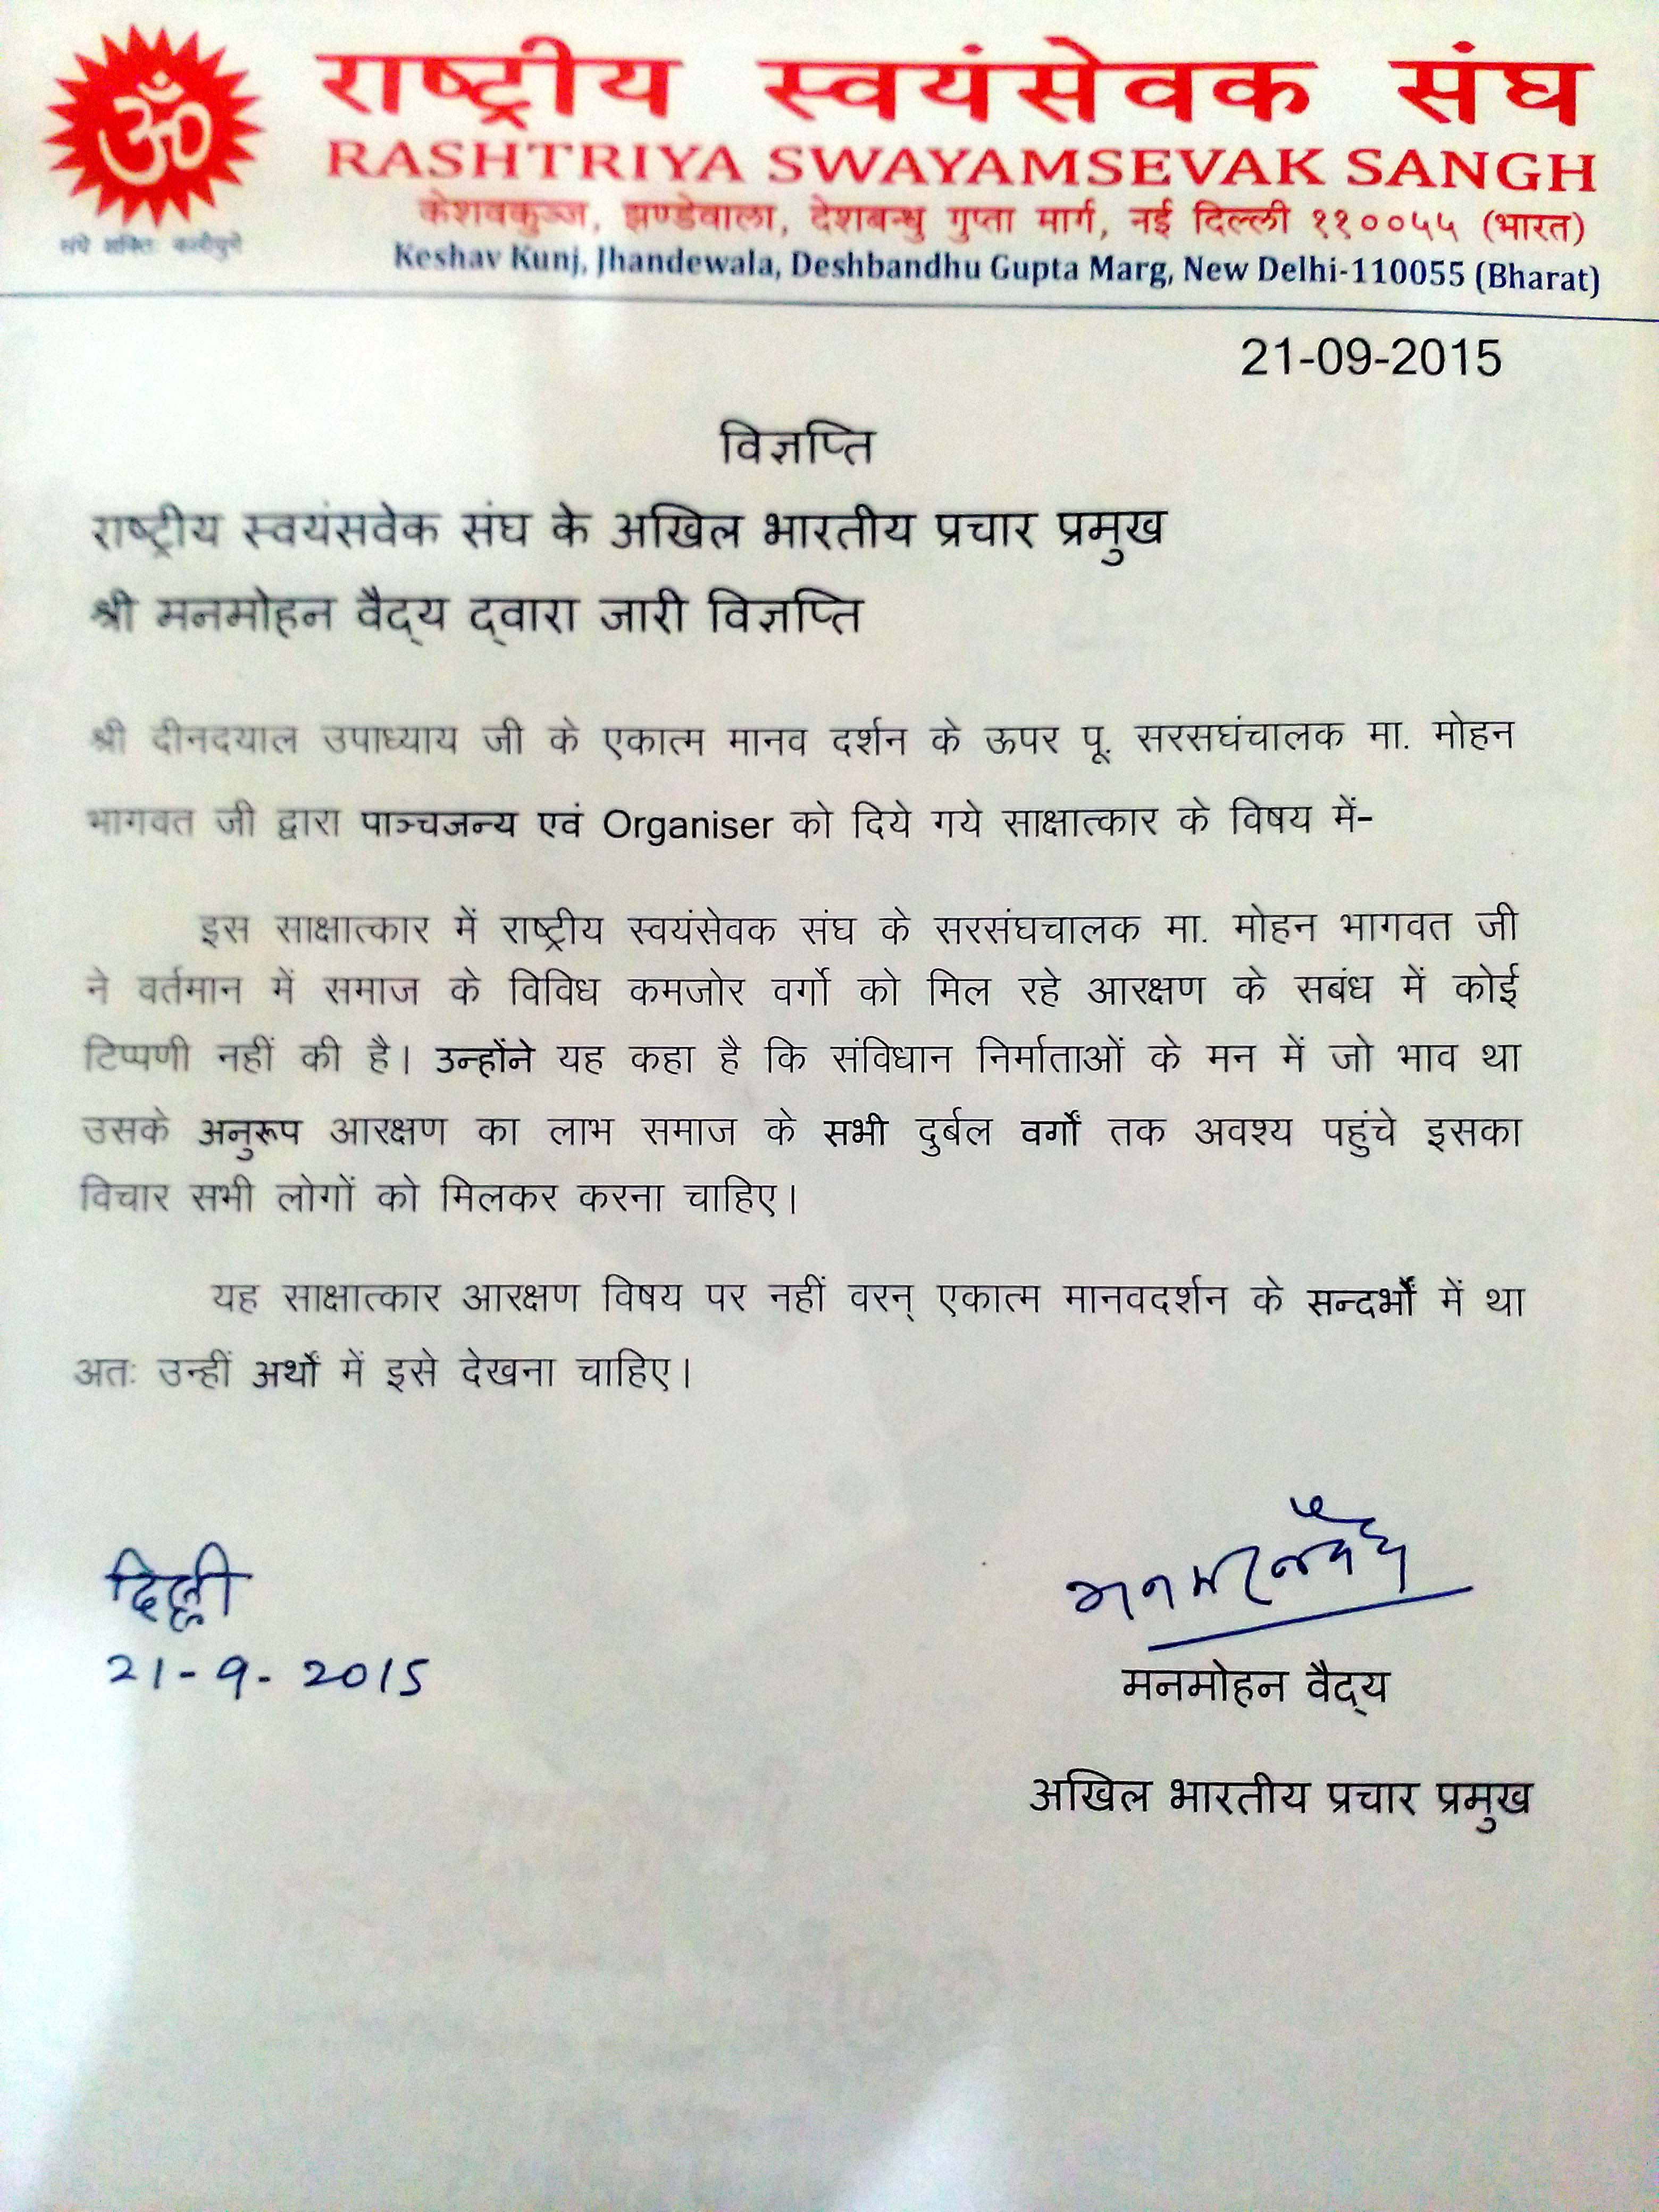 RSS Press Release-21-9-2015